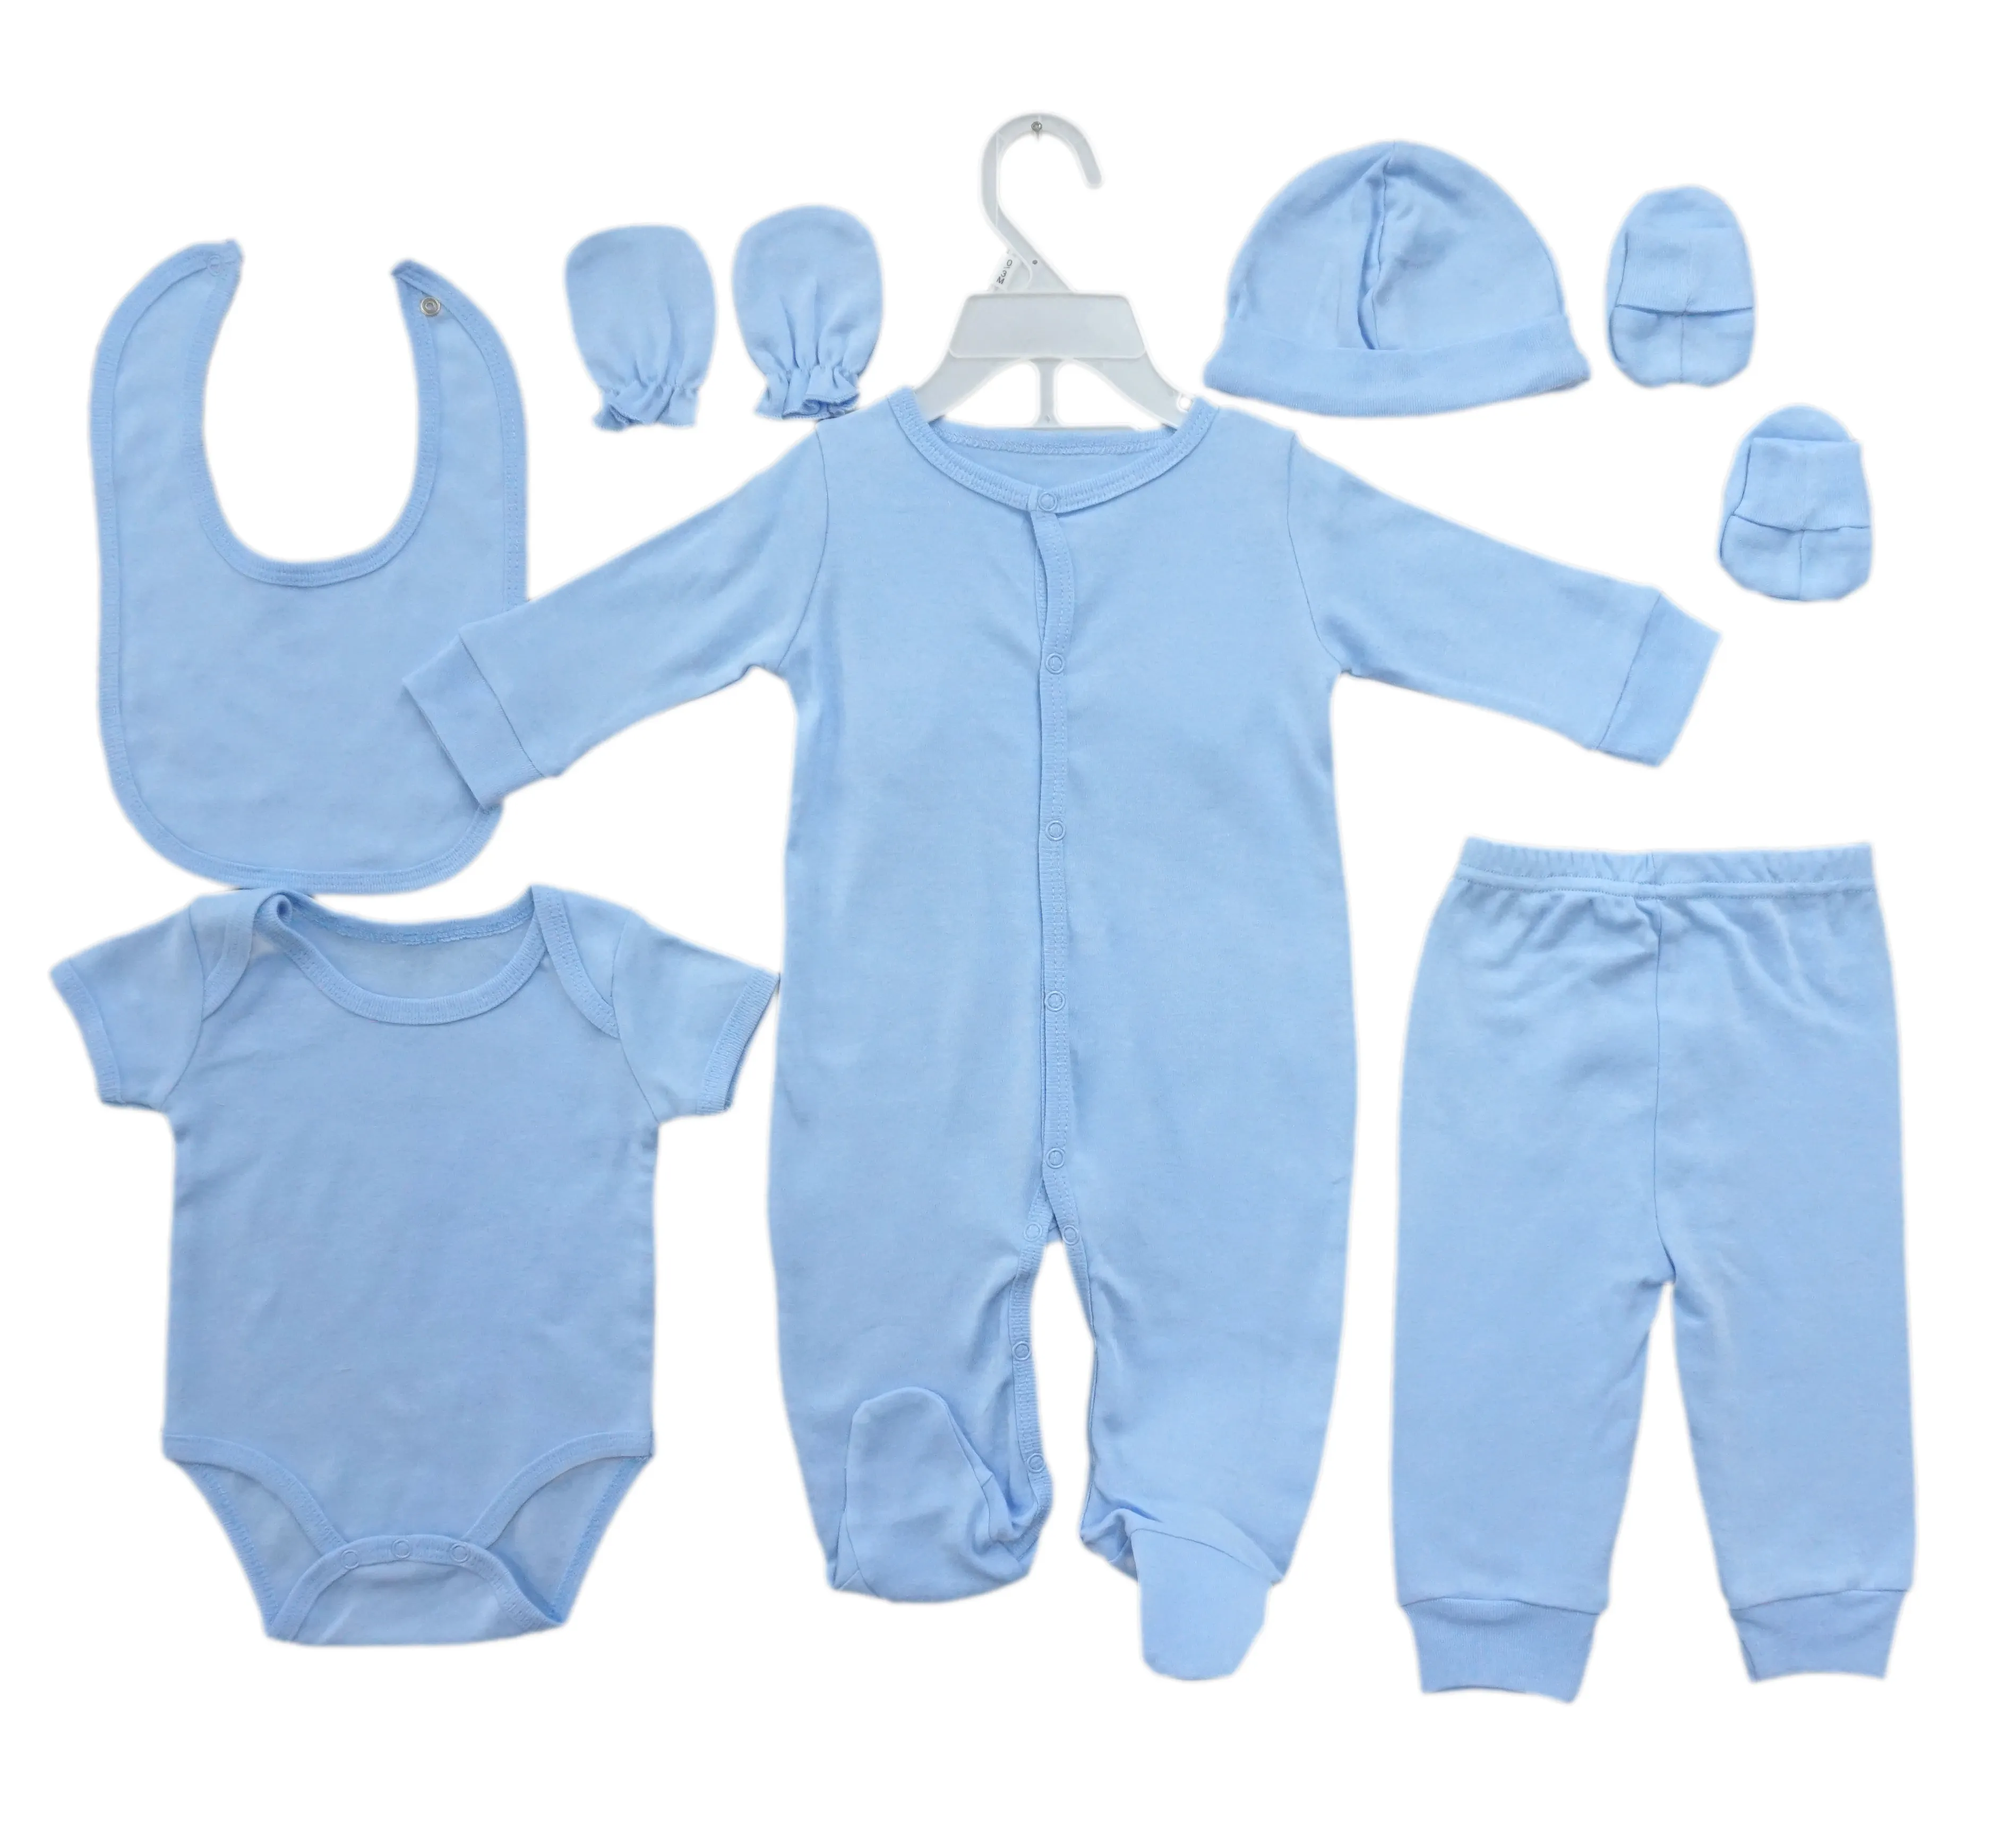 03 Monate Neugeborene Baby kleidung Geschenkset billiger Baby kleidung Baby Schlafanzug.